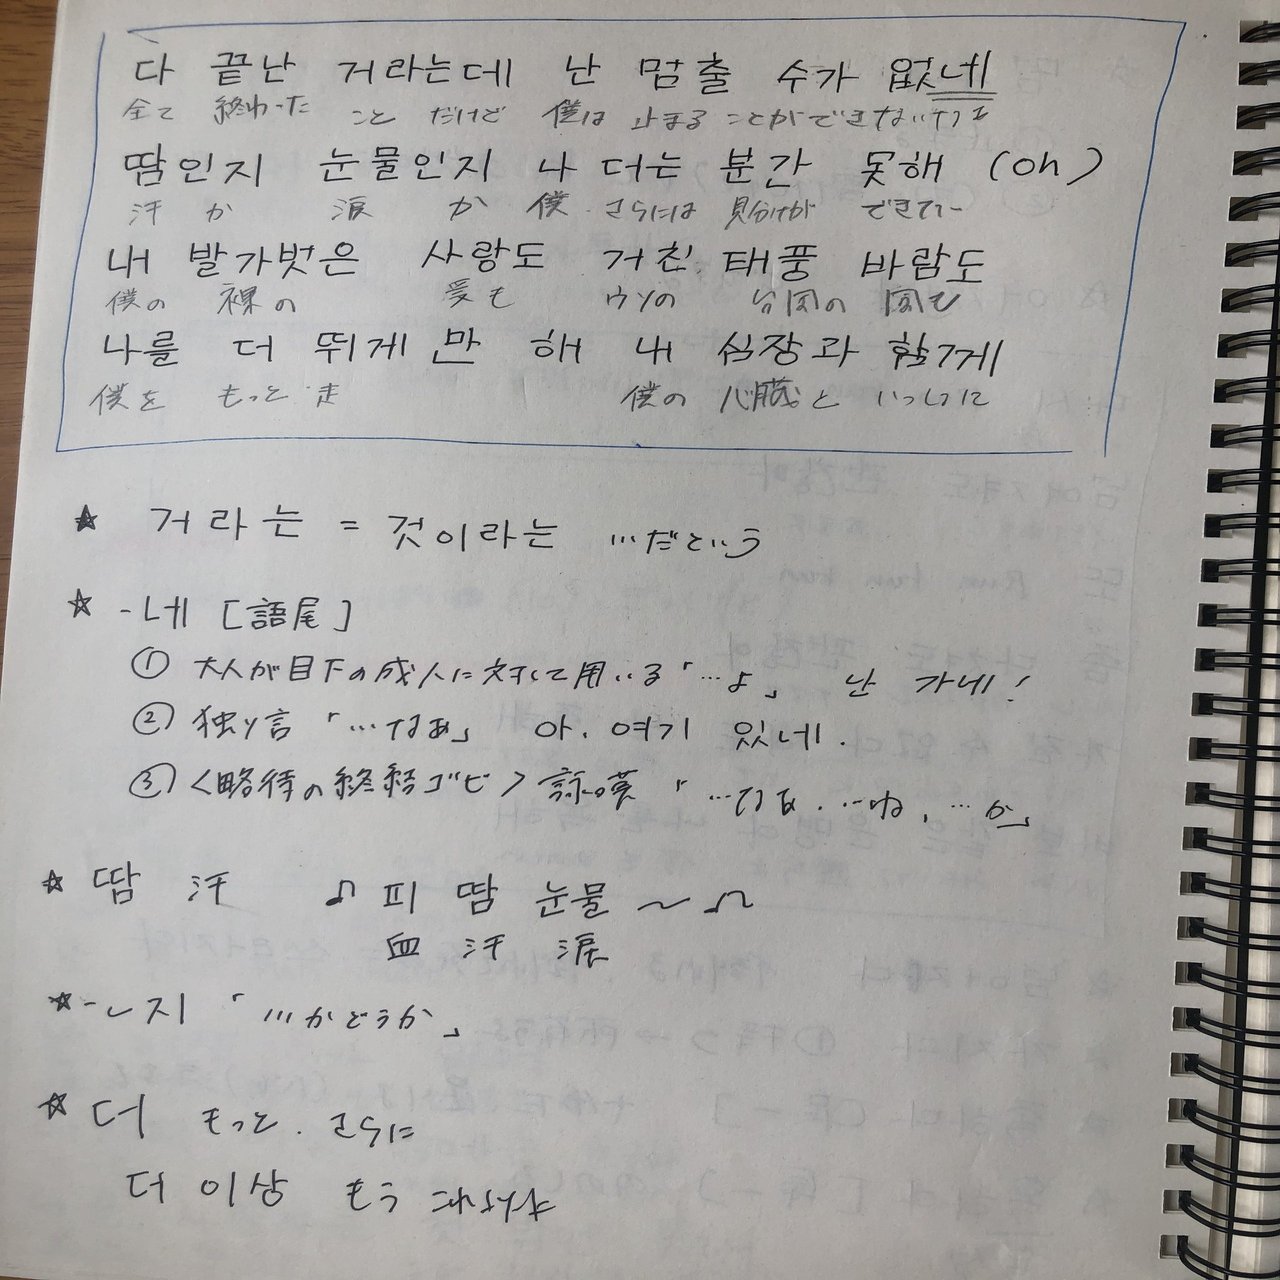 わたしの学習方法 歌詞から勉強編 Shiho Note